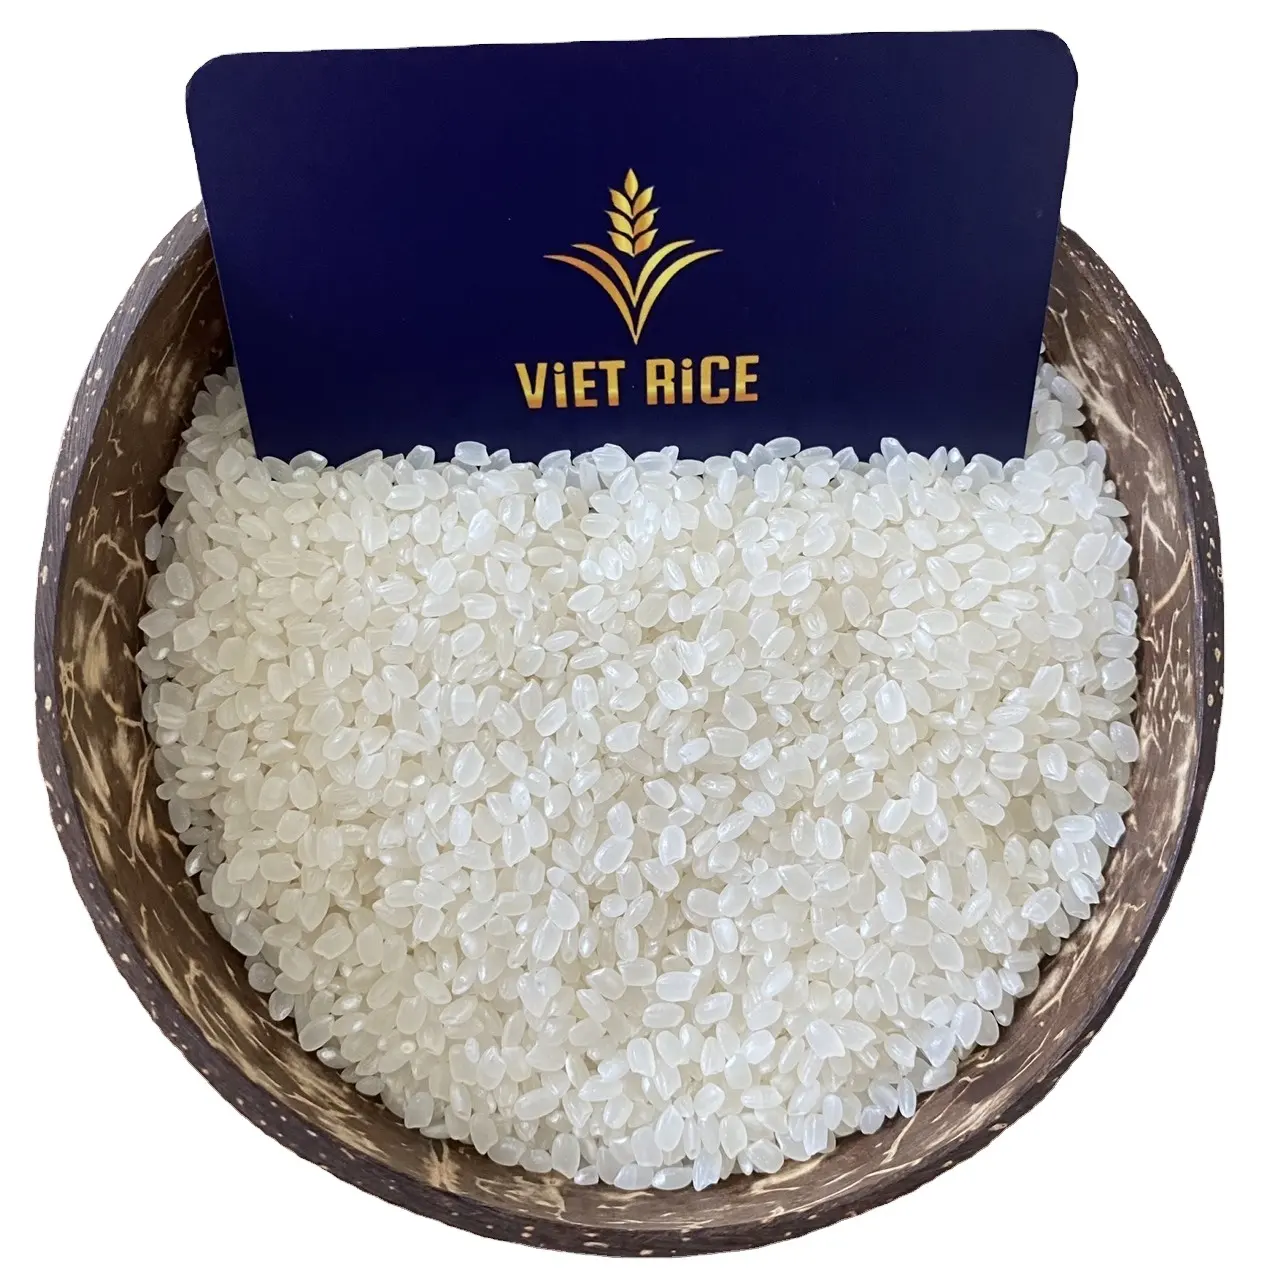 Japonica Rice 5% сломанный, бестселлер от Вьетнама со вкусом мягкий сладкий, Международная Стандартная доставка по всему миру, riz